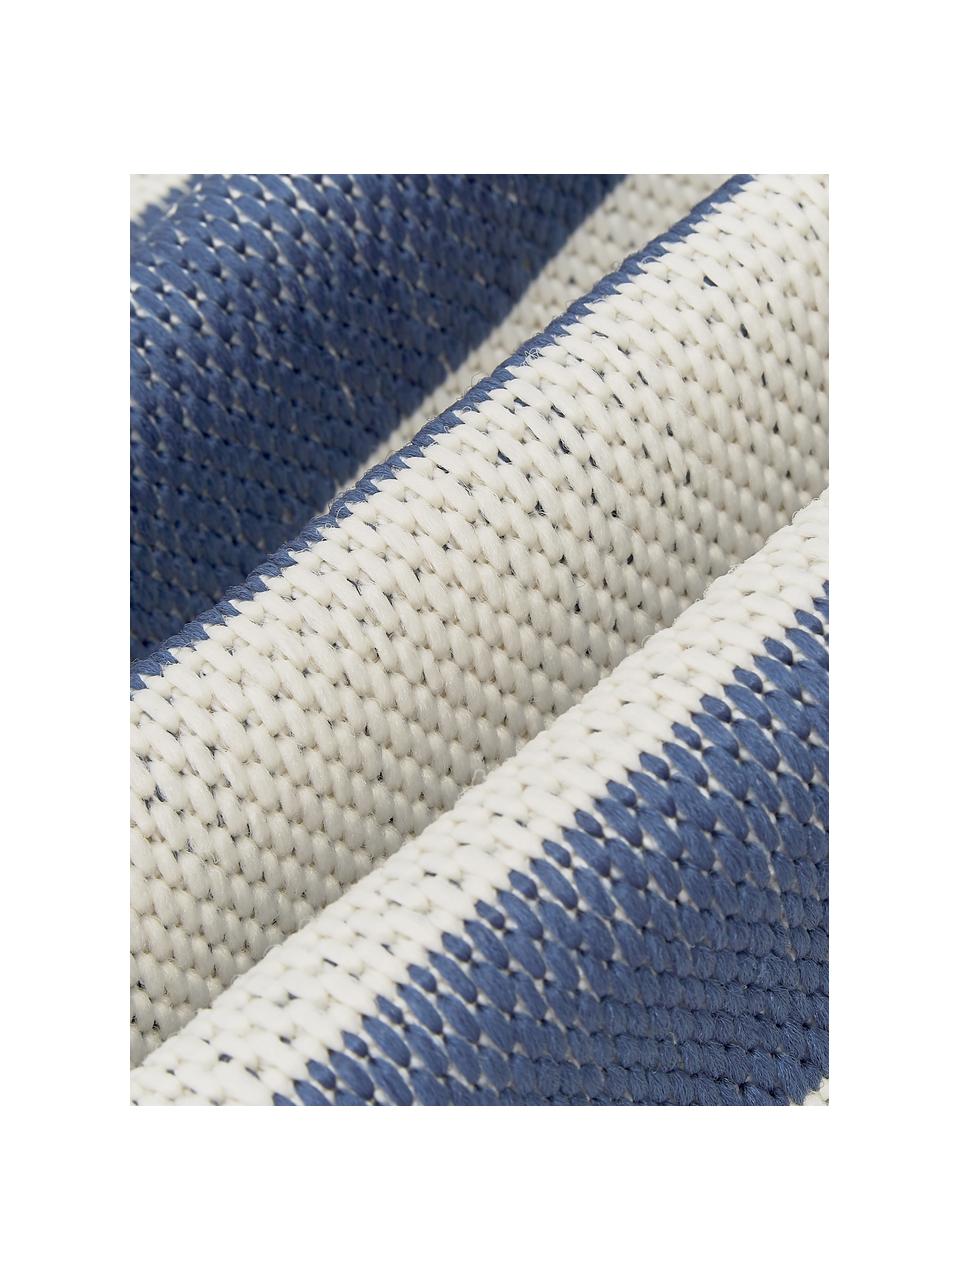 Pruhovaný interiérový a venkovní koberec Axa, 86 % polypropylen, 14 % polyester, Krémově bílá, modrá, Š 200 cm, D 290 cm (velikost L)